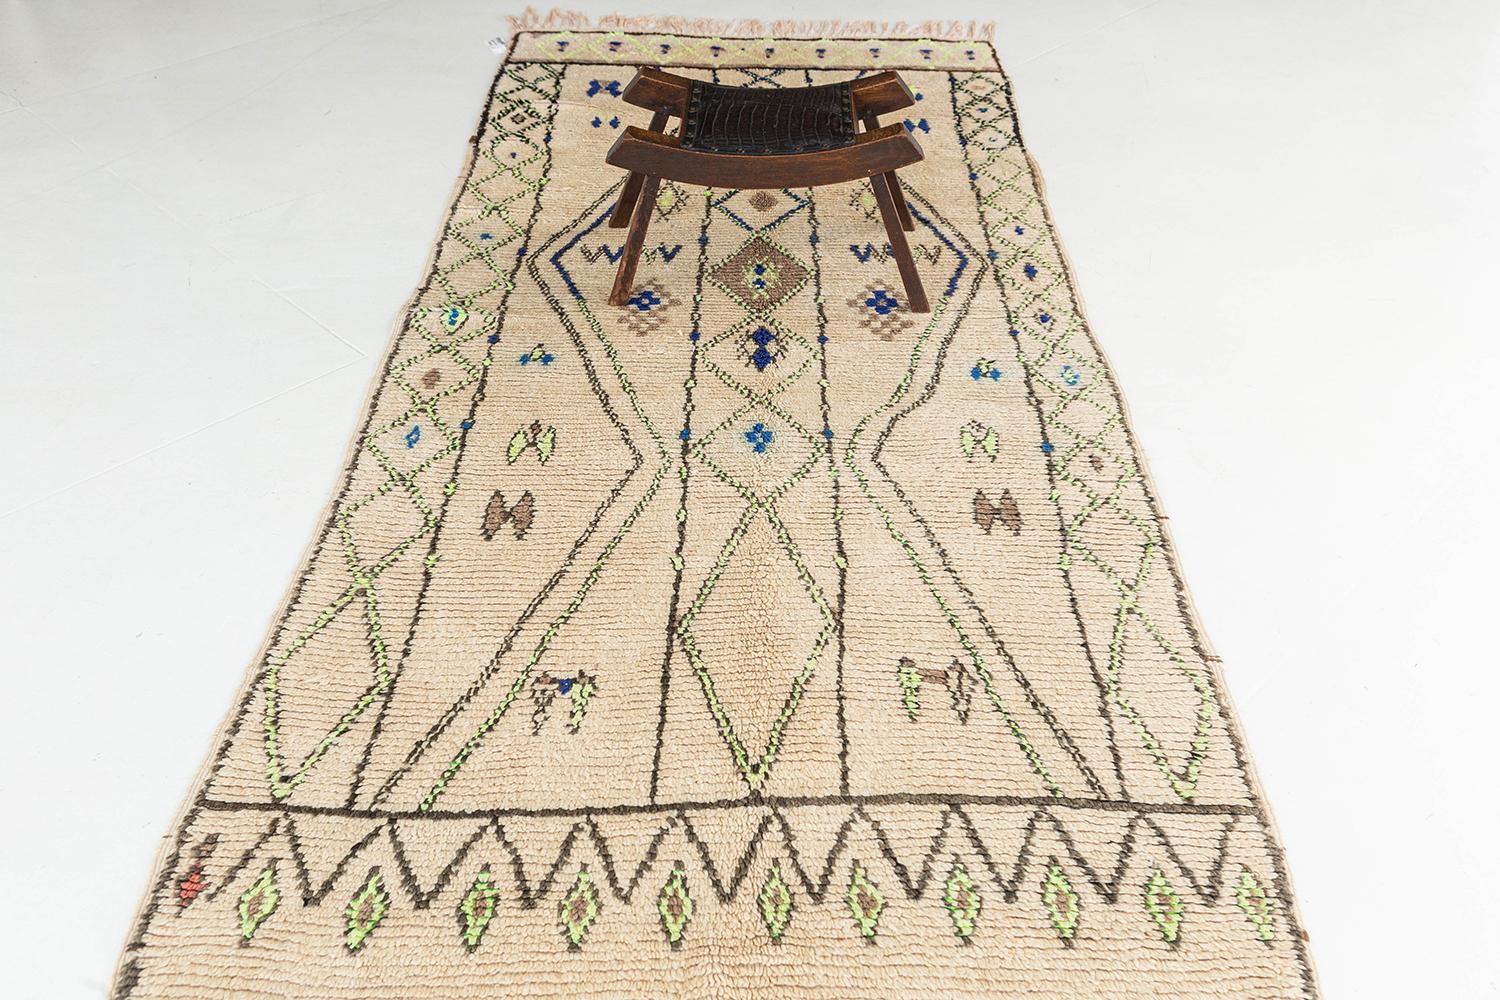 Un fascinant tapis berbère marocain vintage de la tribu Azilal qui présente une variété de motifs symétriques élaborés sur tout le champ crème. Ce tapis présente divers éléments tribaux symboliques qui sont méticuleusement tissés tout au long de la